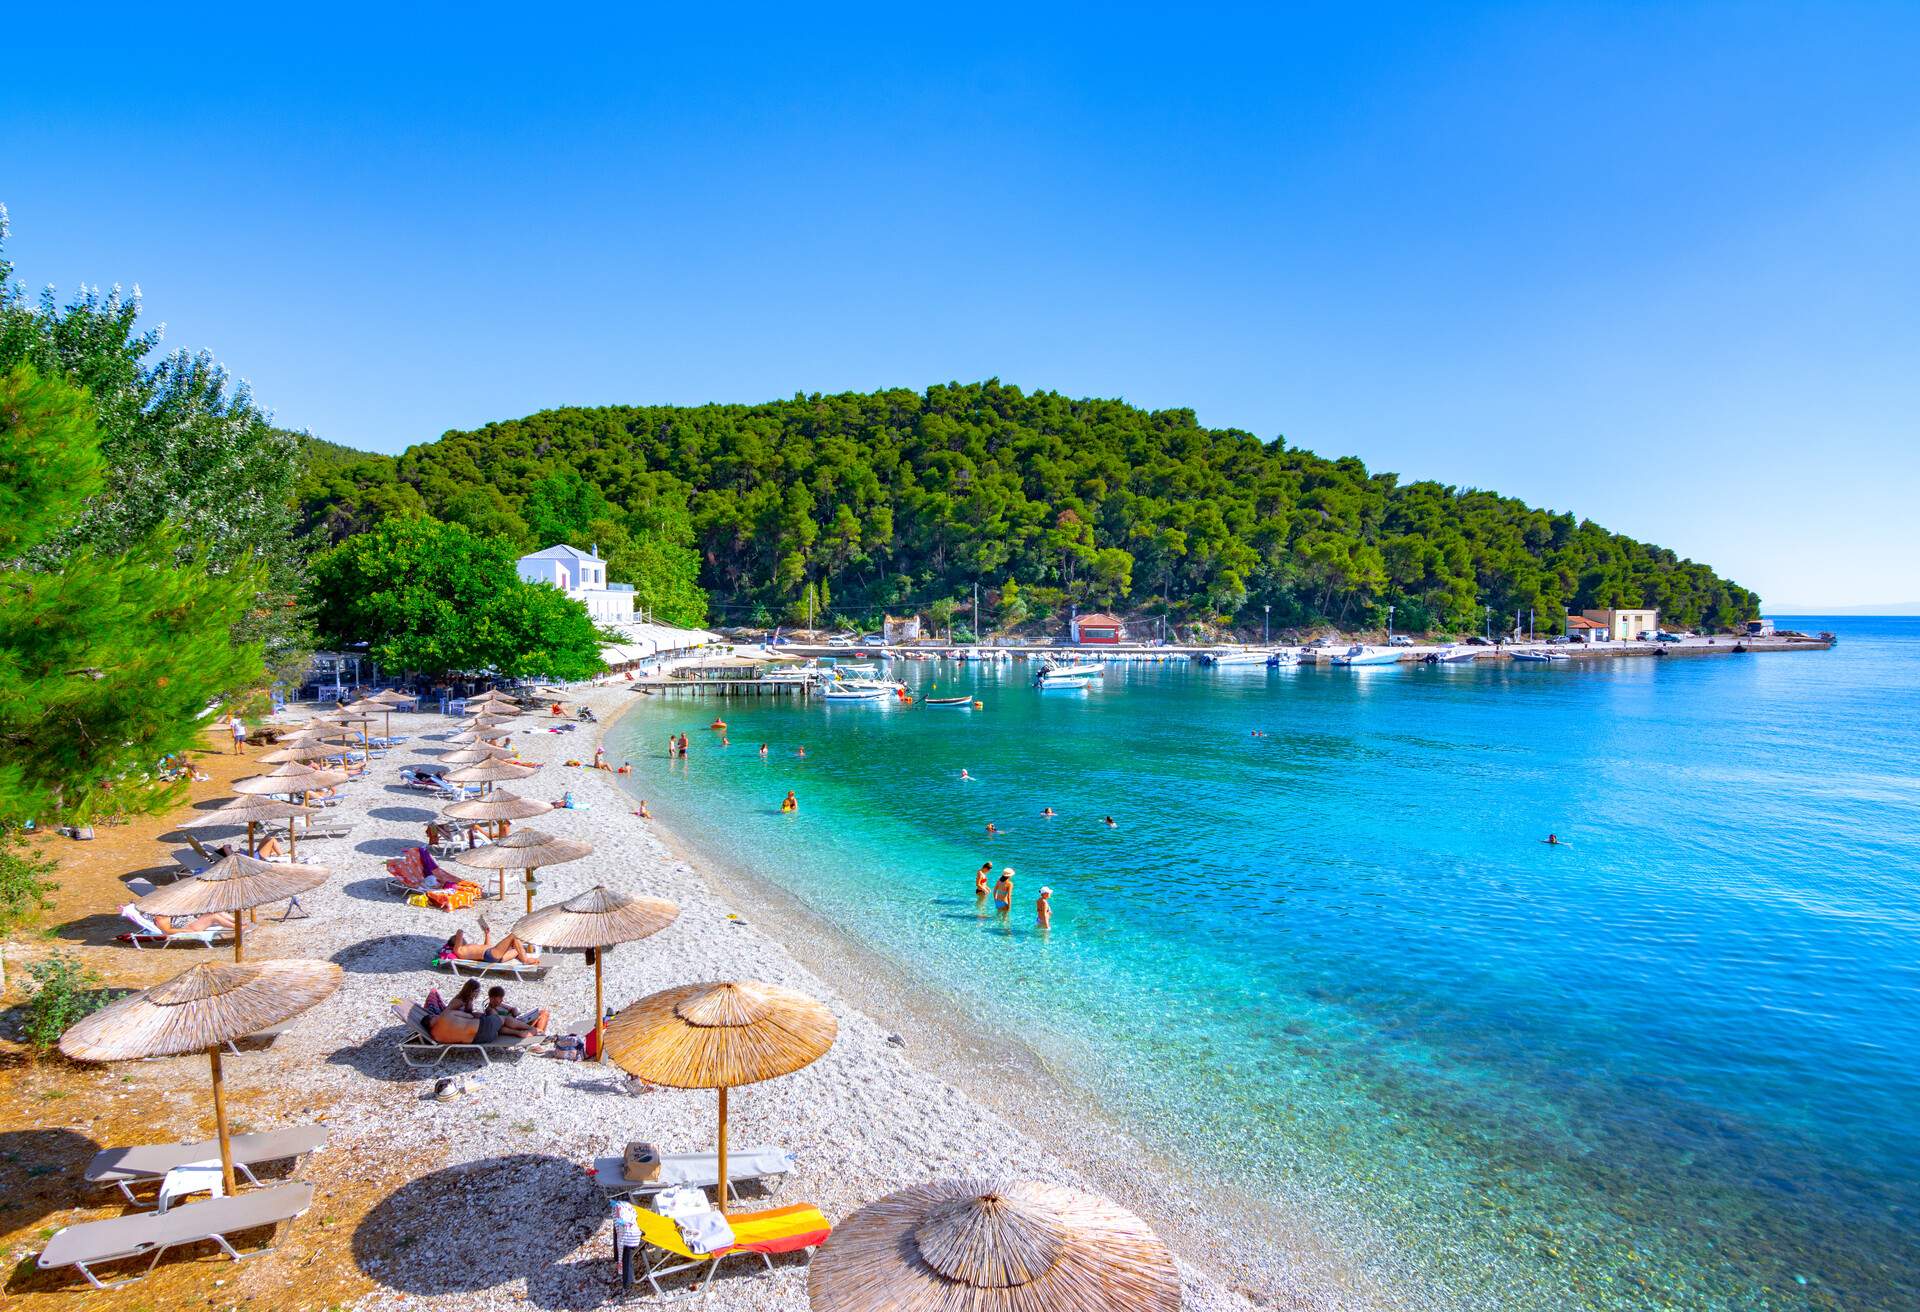 Amazing beach of Agnontas, Skopelos, Greece.